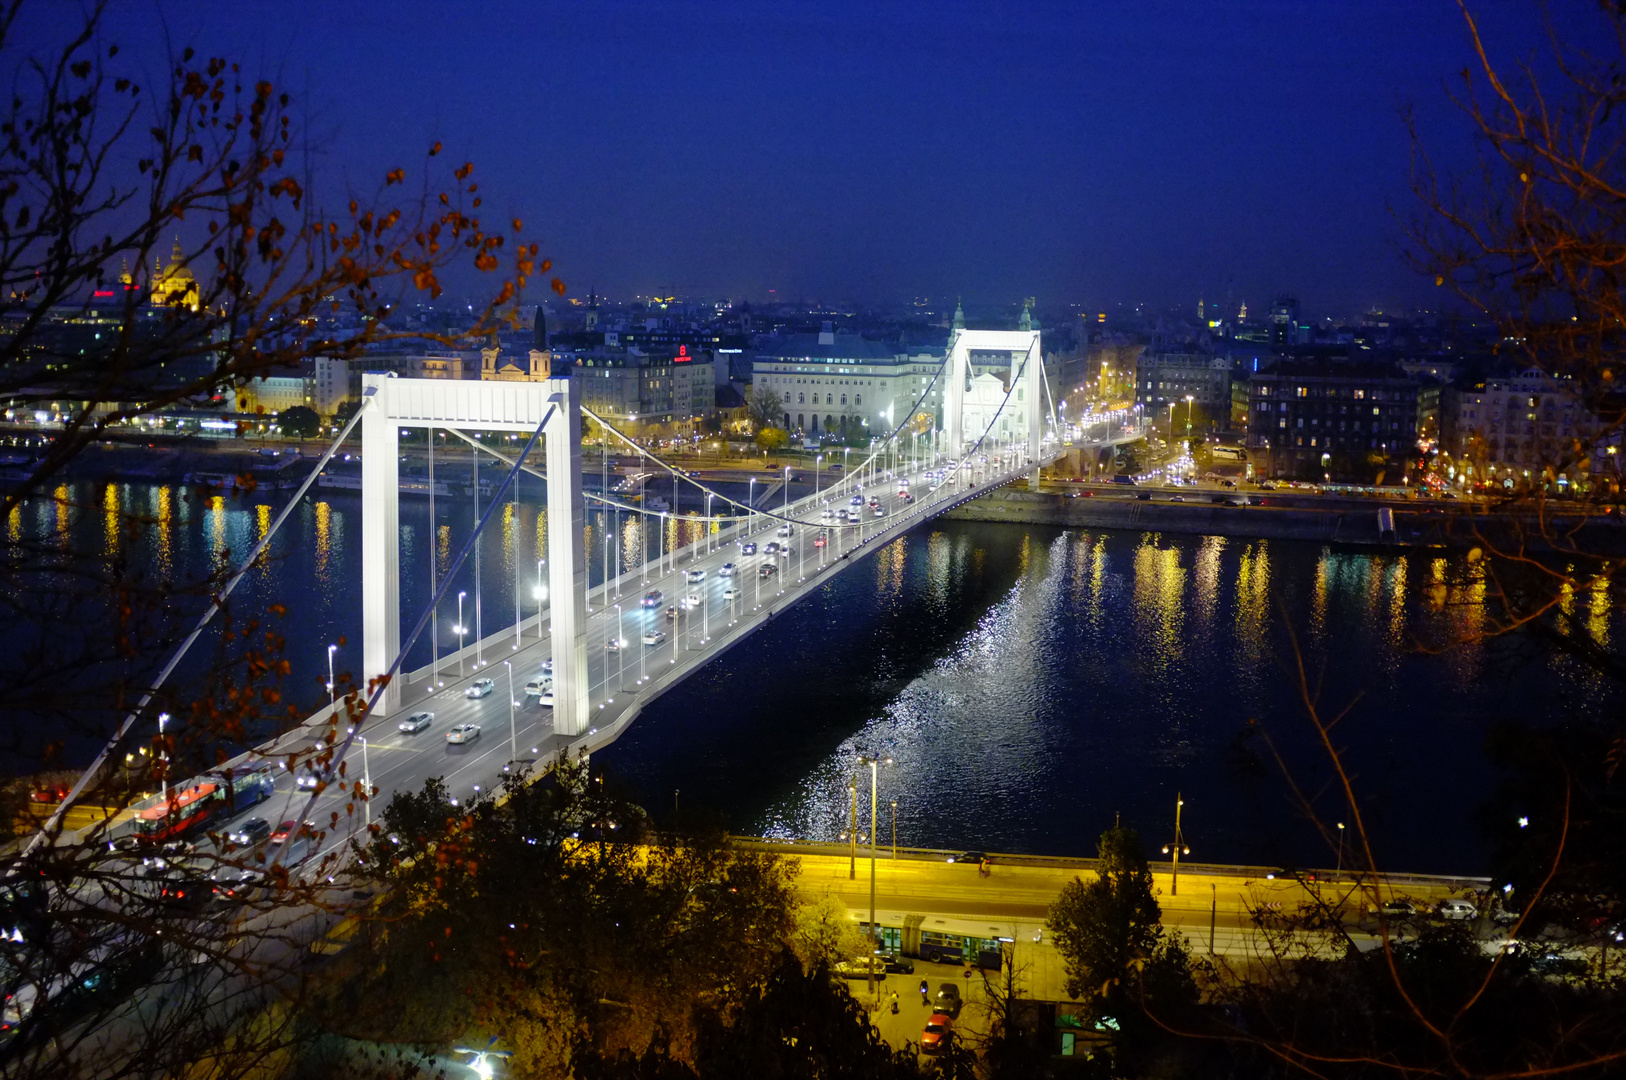 Elisabethbrücke Budapest